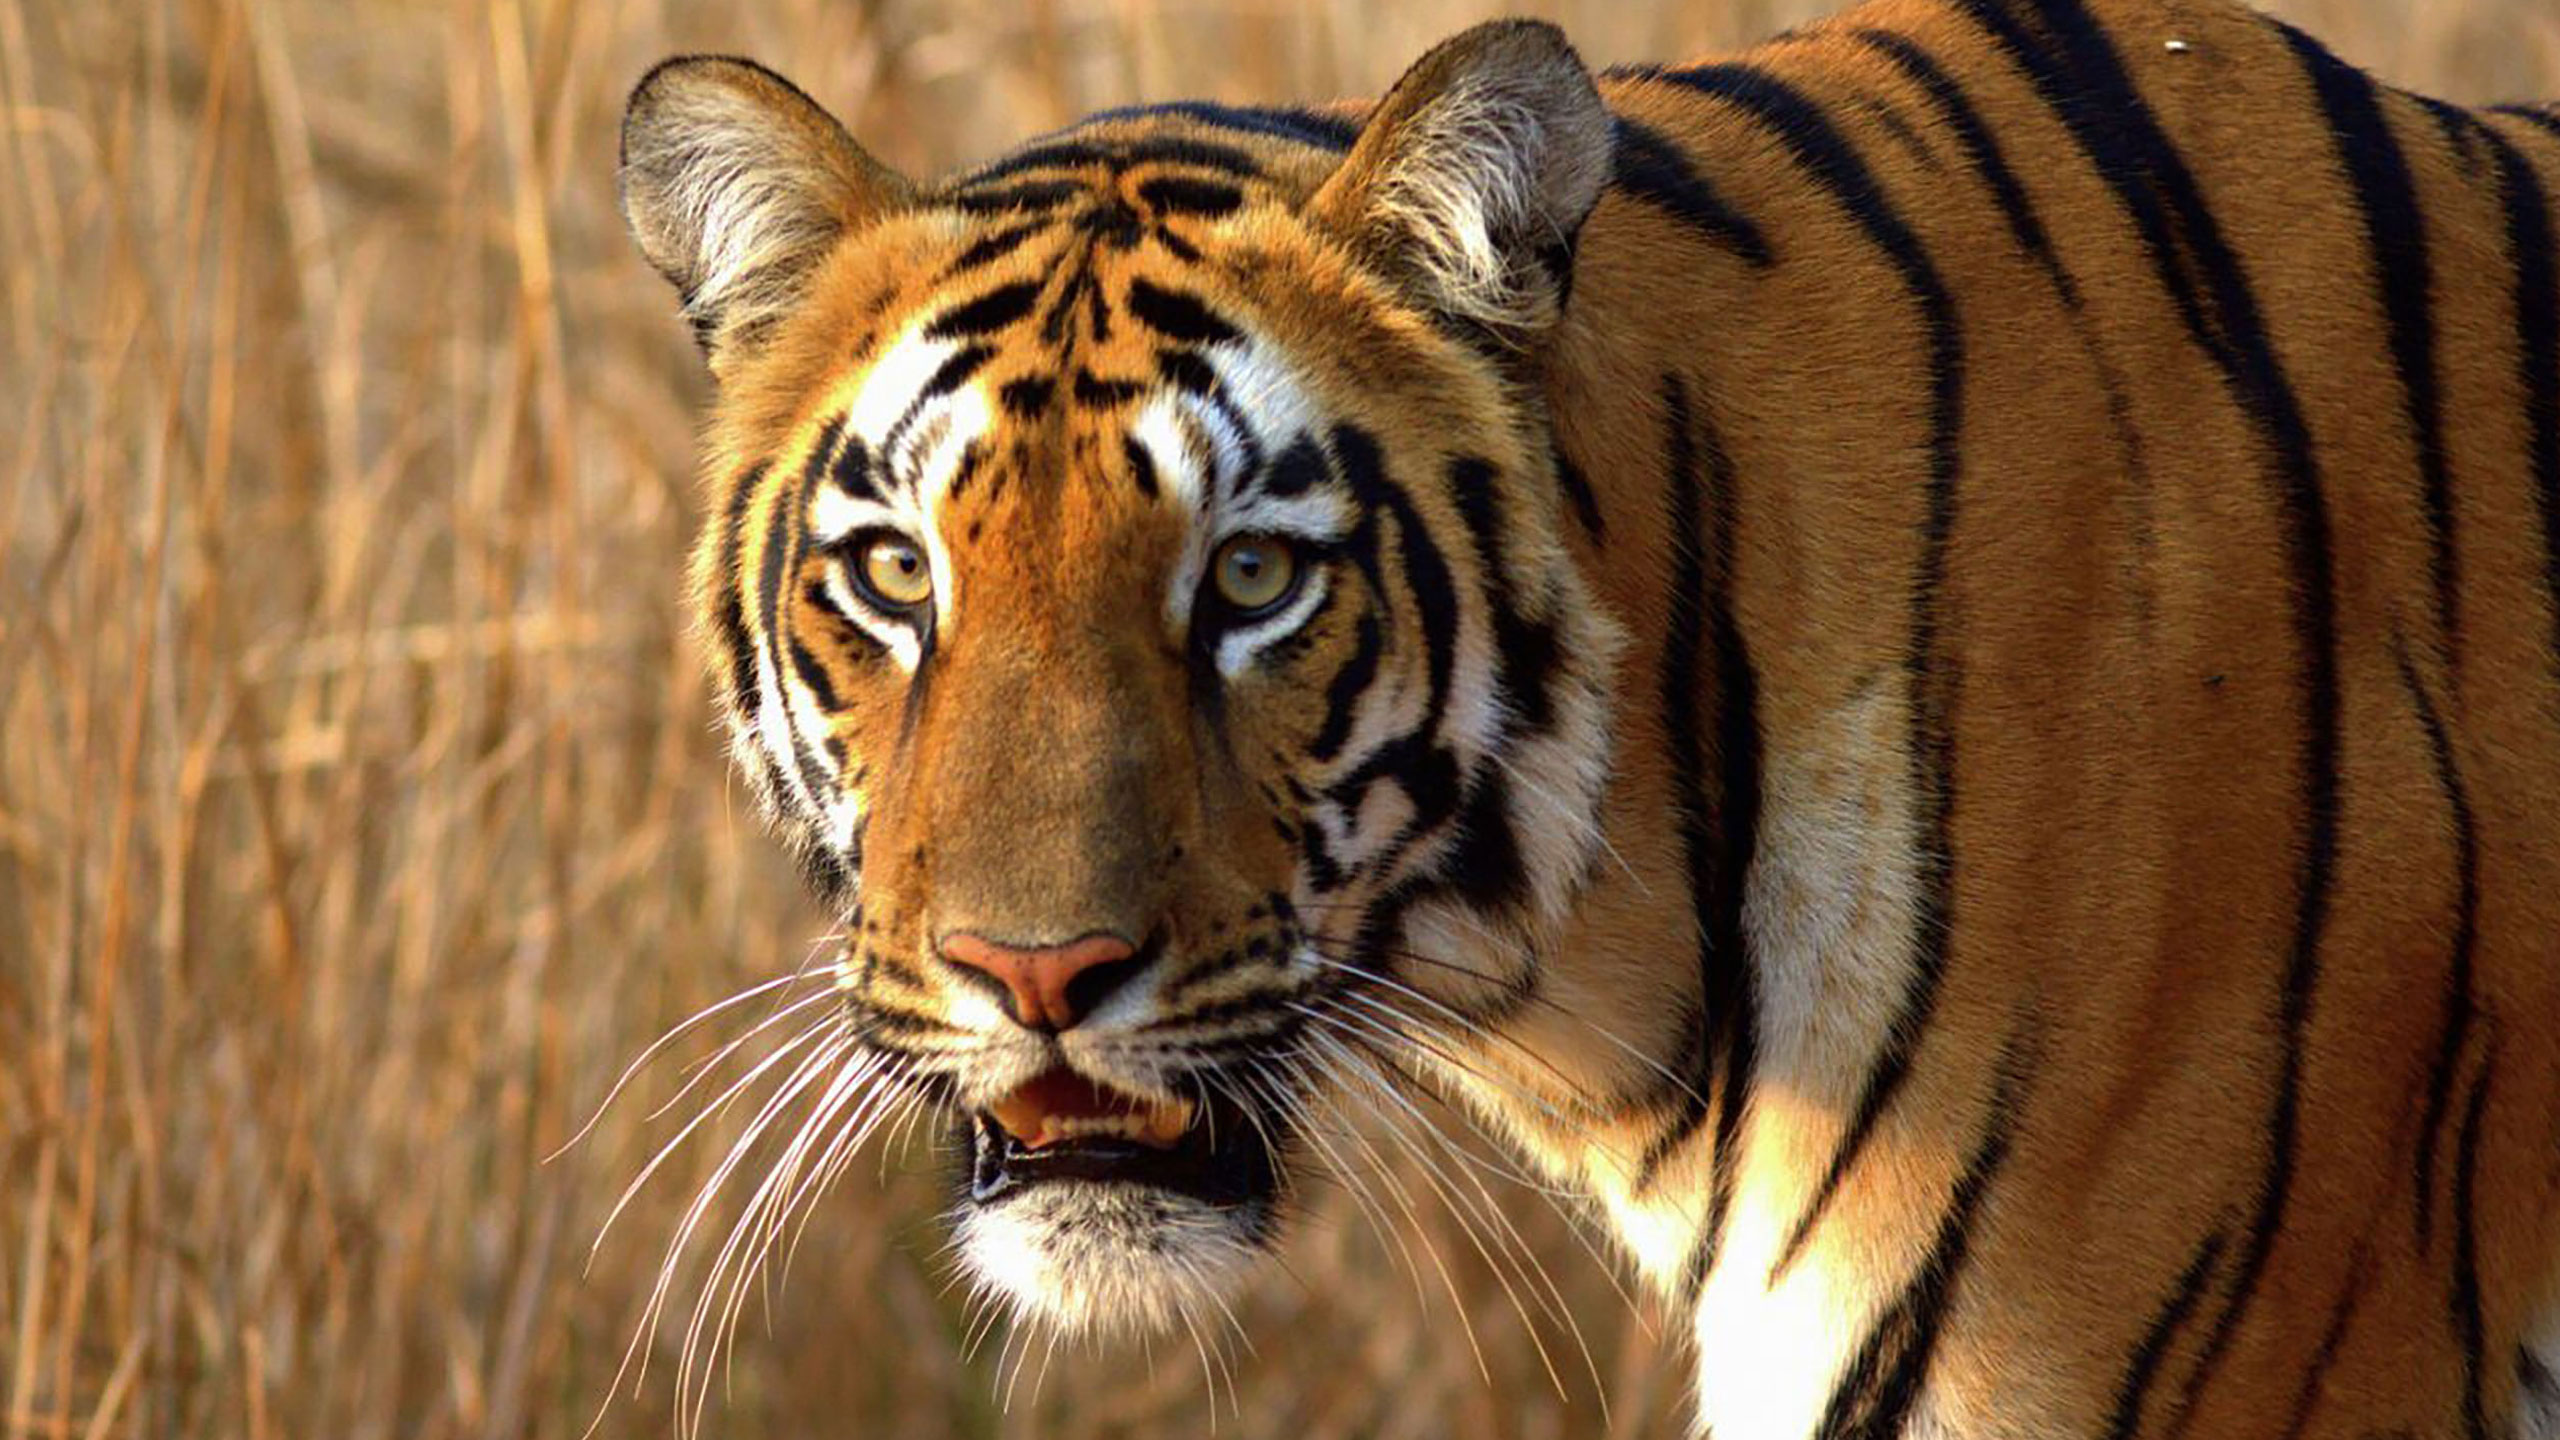 Sushma-Mishra-Tiger-Featured-image